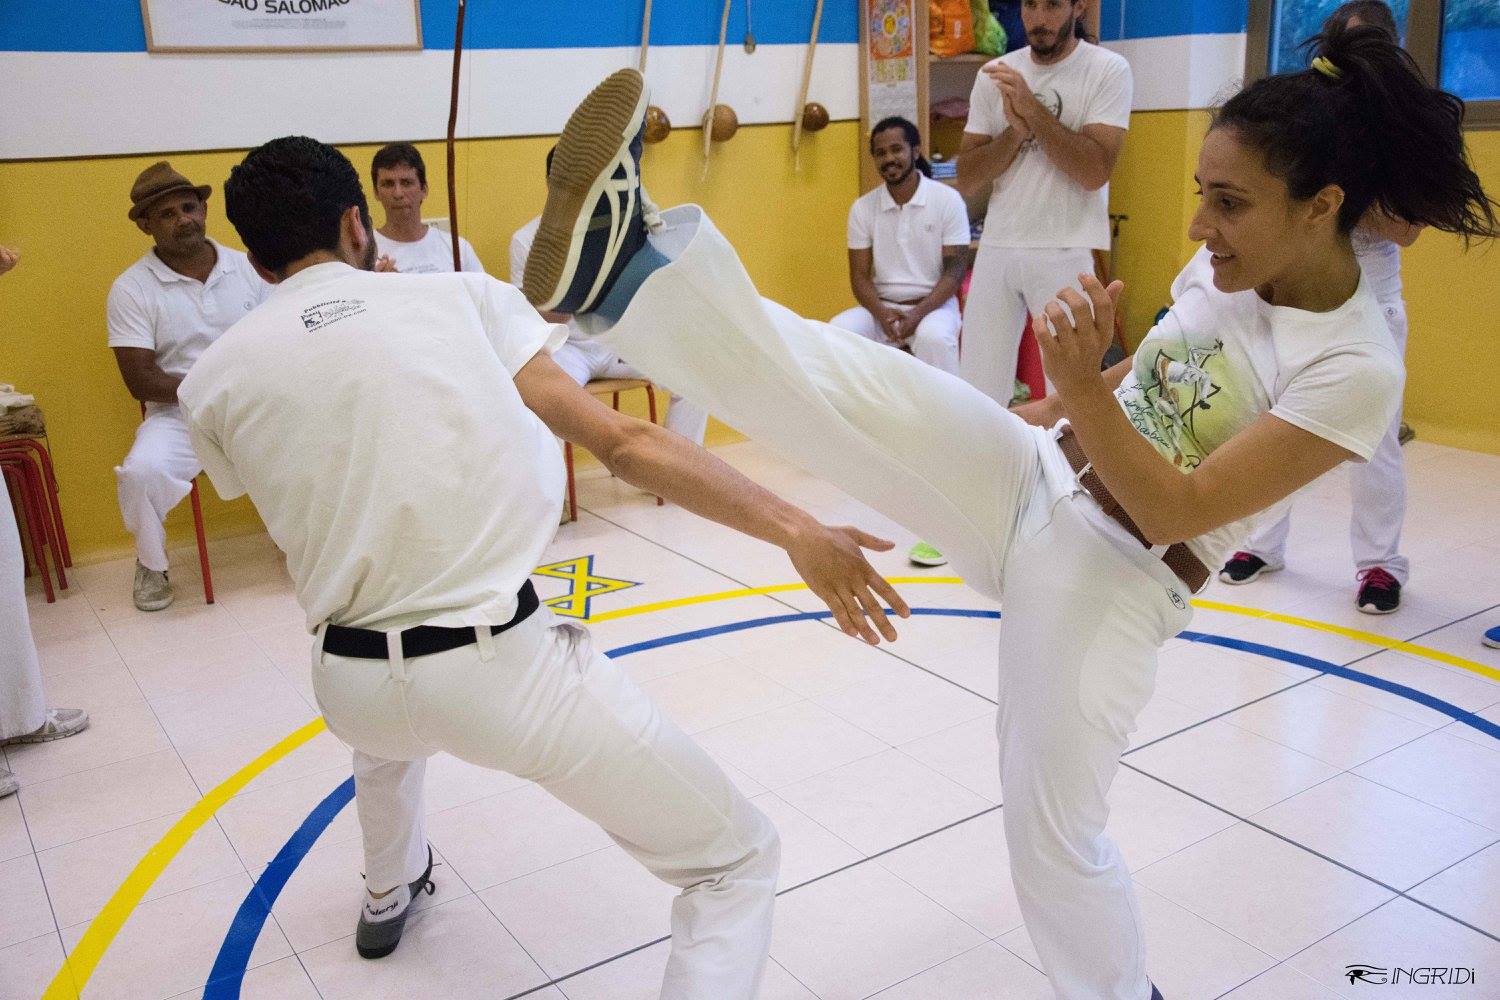 Formada Guerreira e Formado Habib, Centro di Capoeira São Salomão Roma e Trento